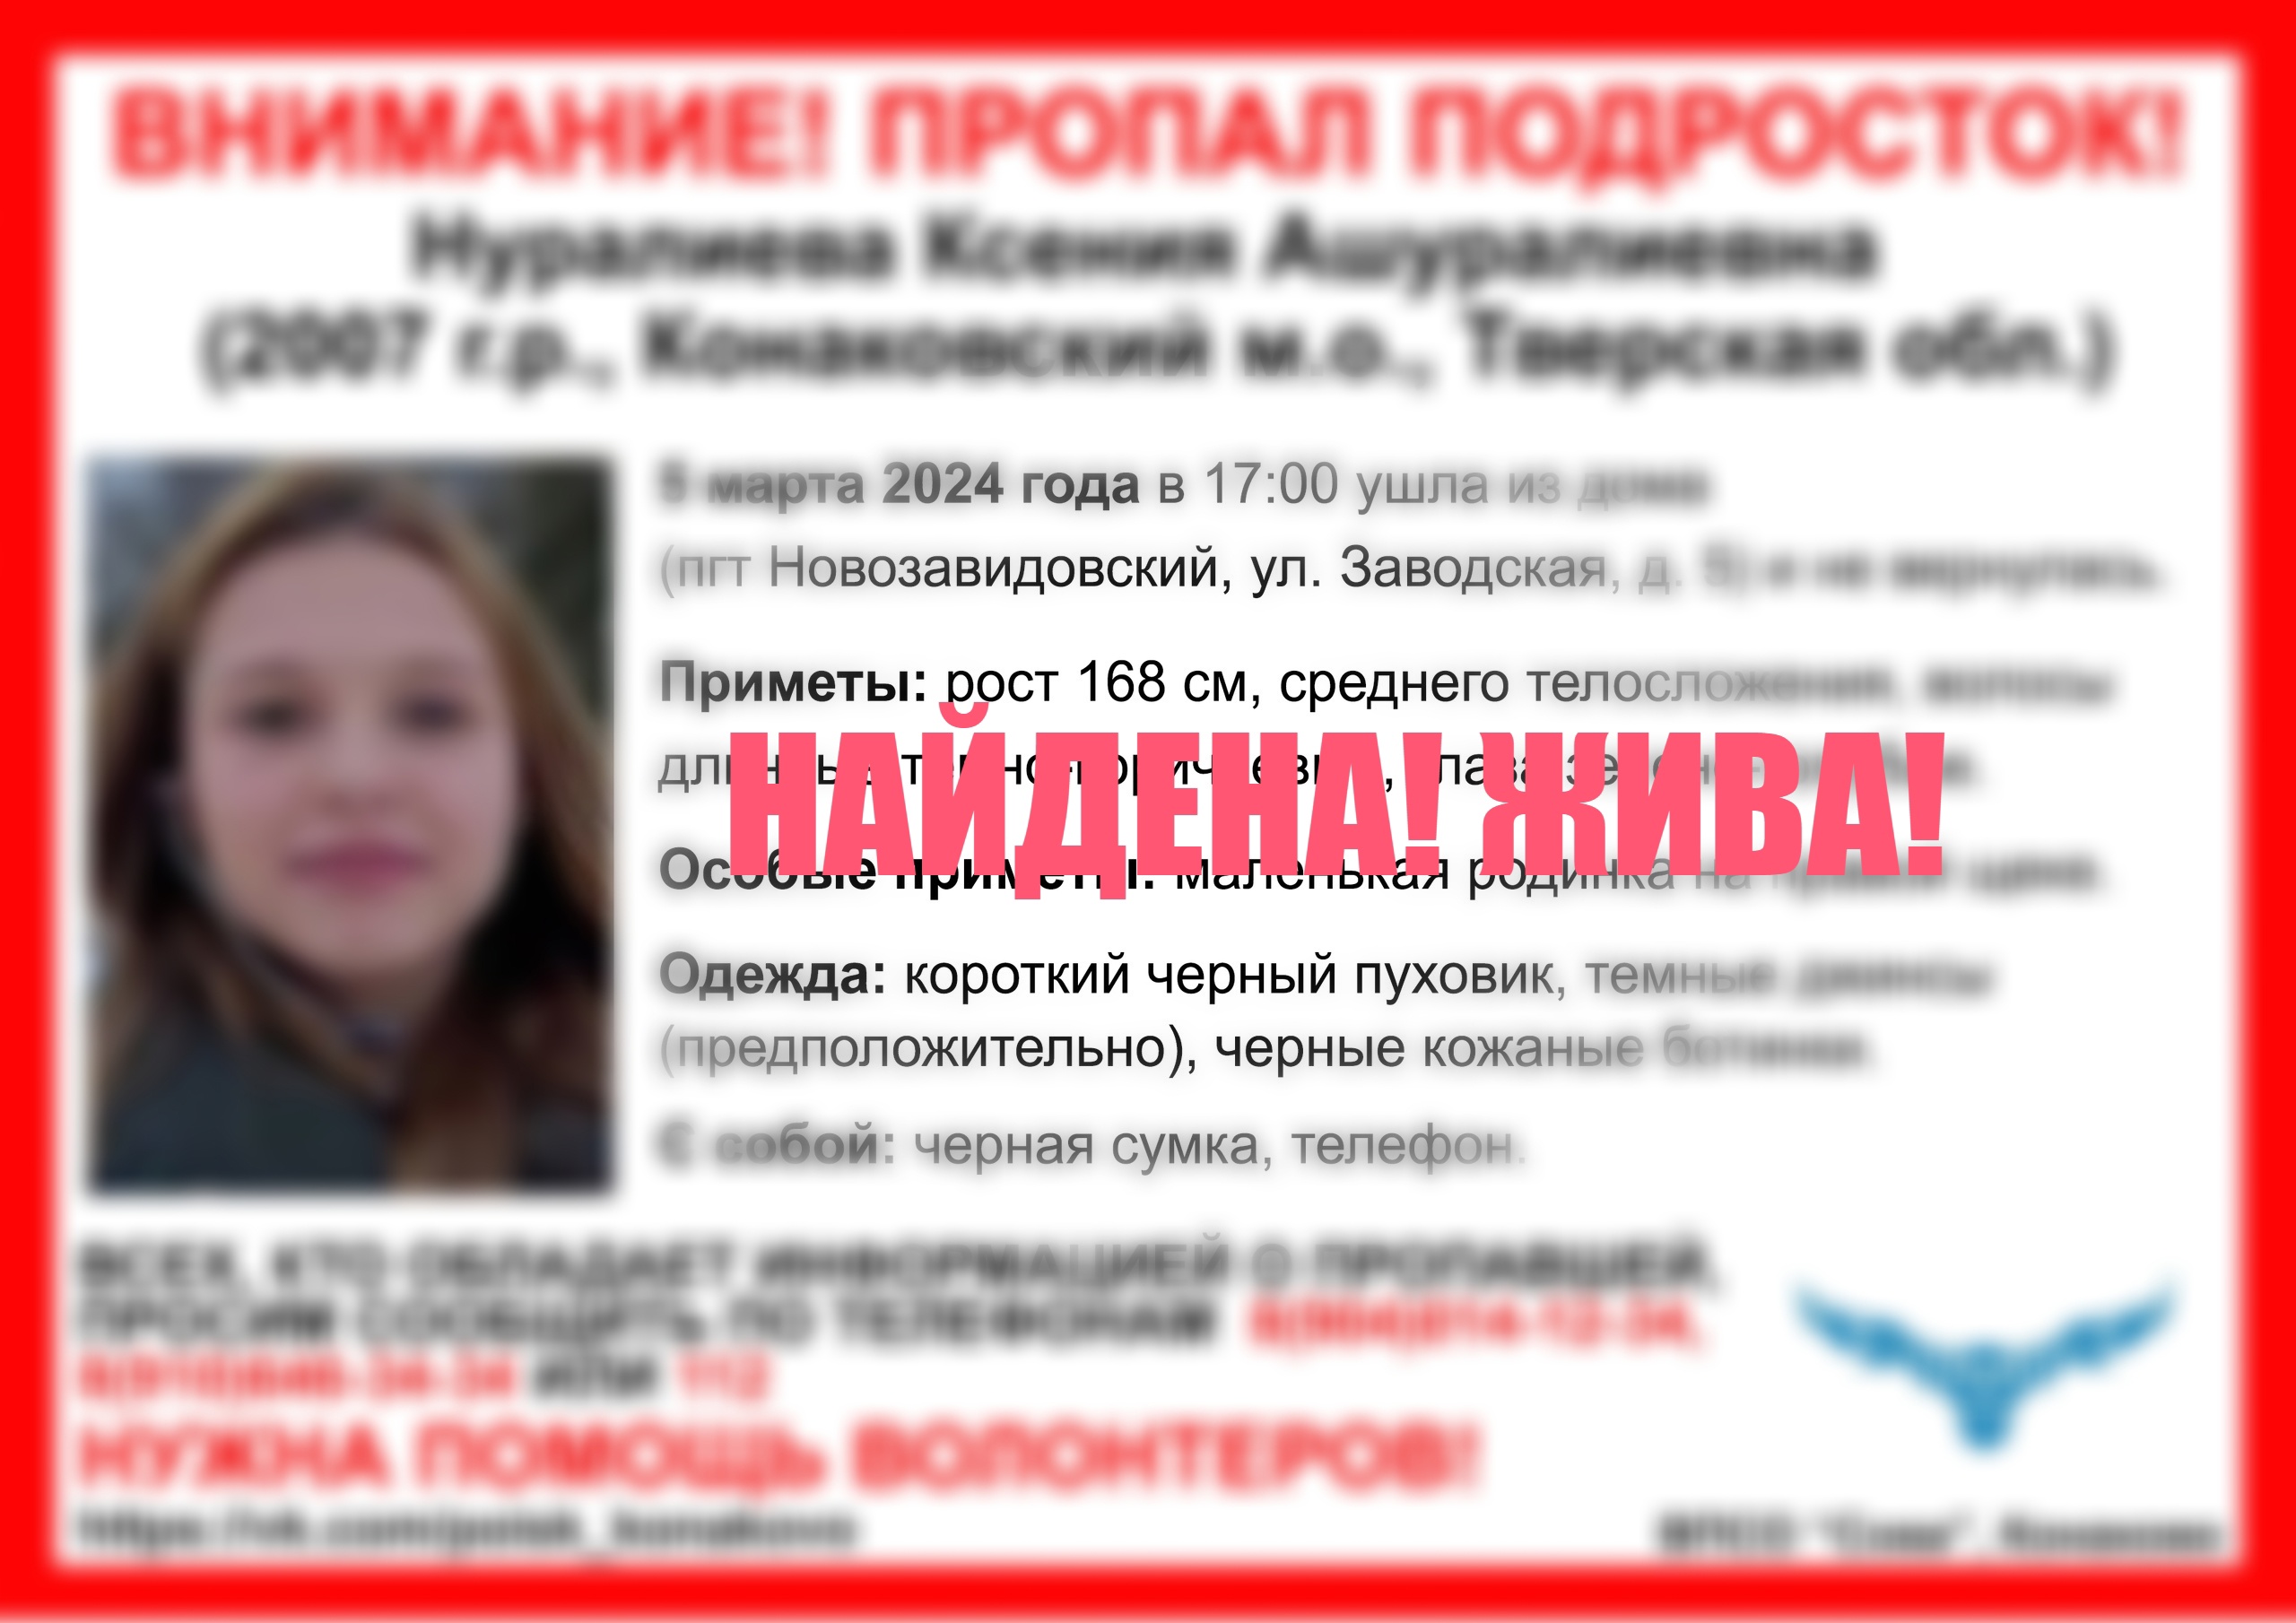 Пропавшая в Тверской области девушка нашлась